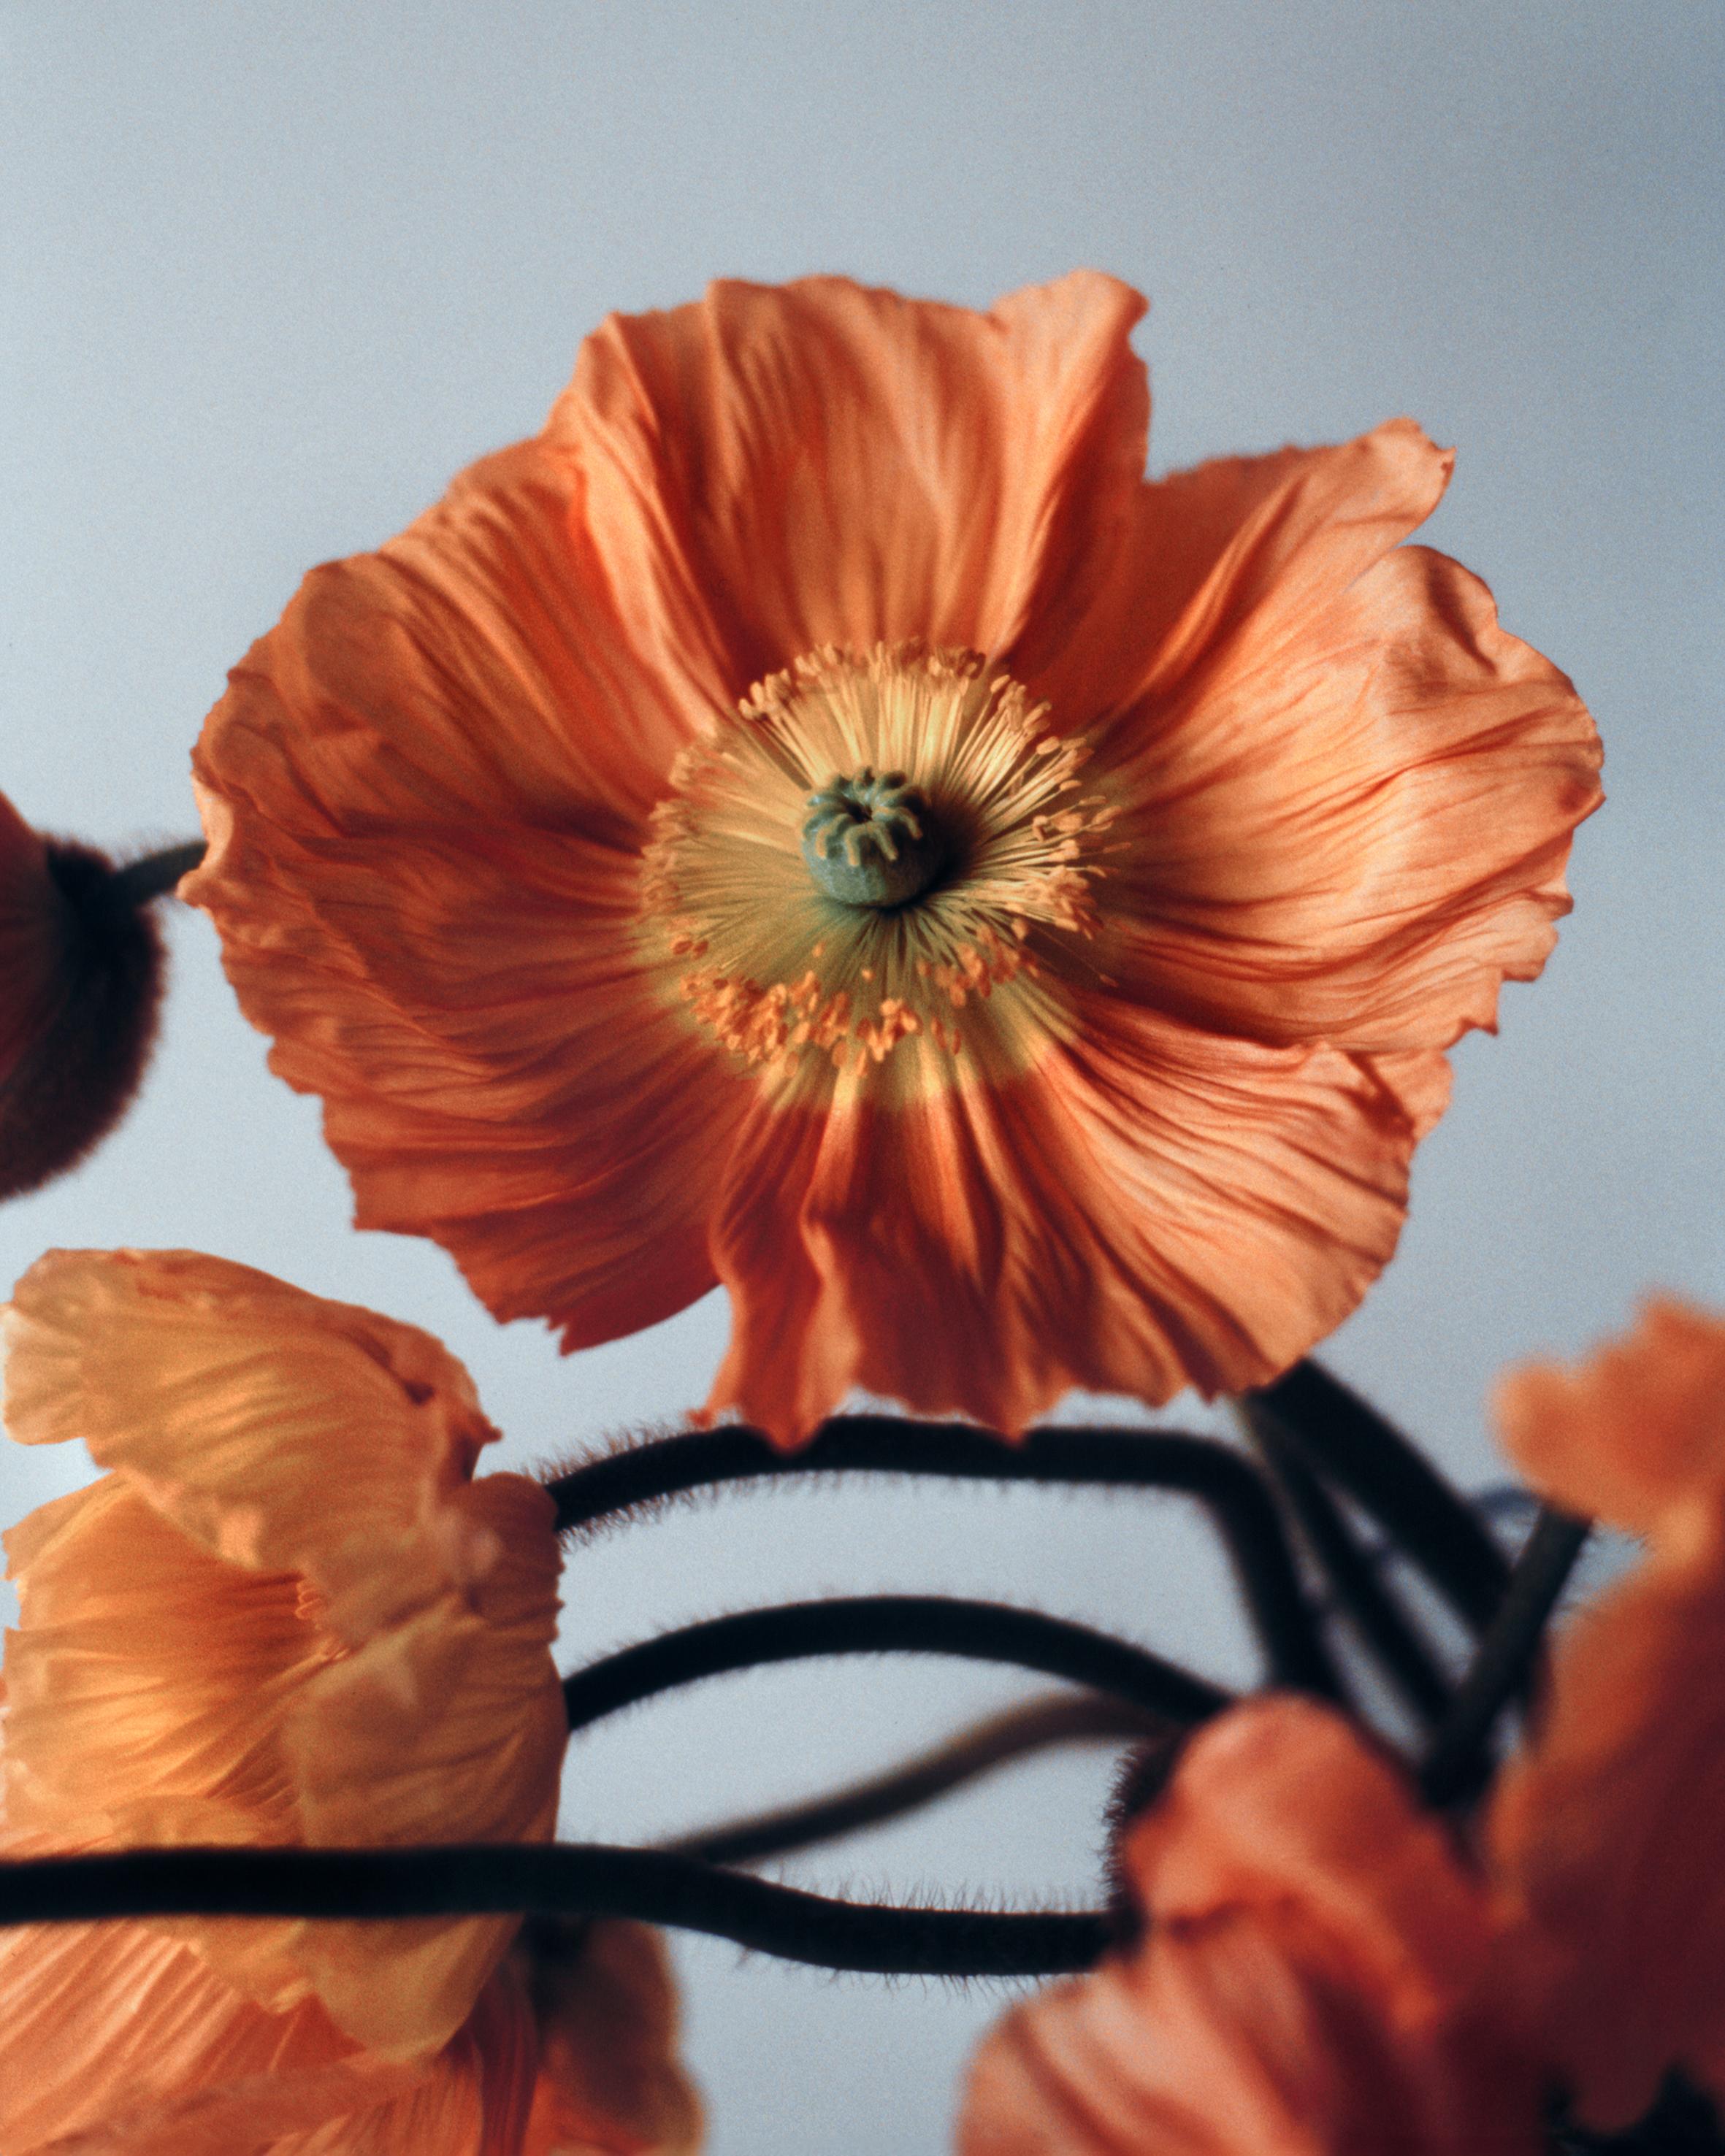 Orange Mohnblumen Nr.2 – Analogue Blumenfotografie, limitierte Auflage von 20 Stück